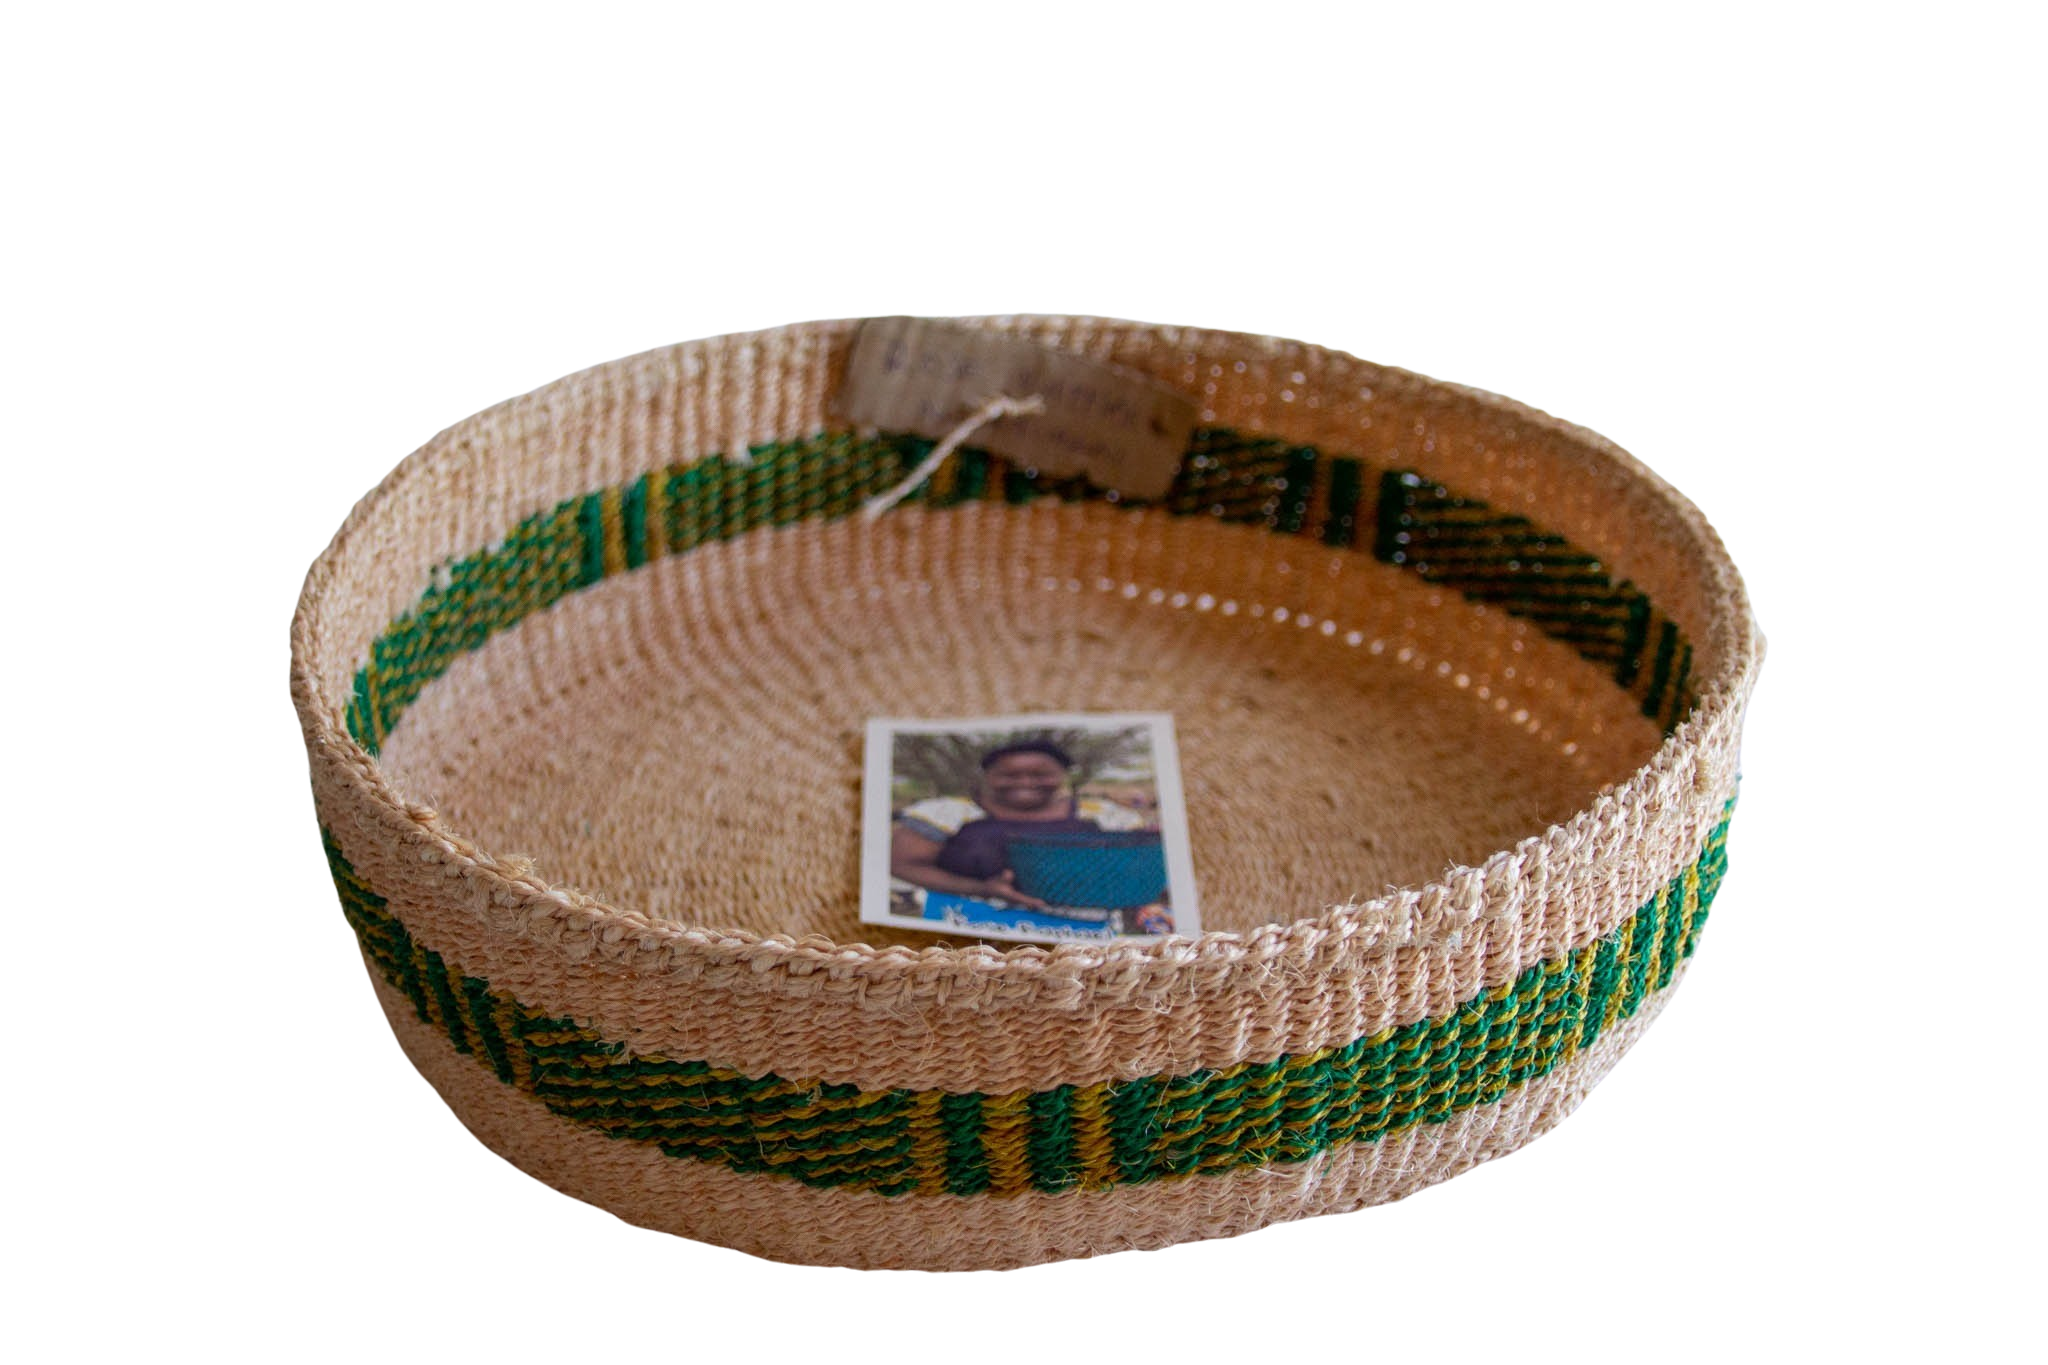 Kenya Green fruit basket of Sisal